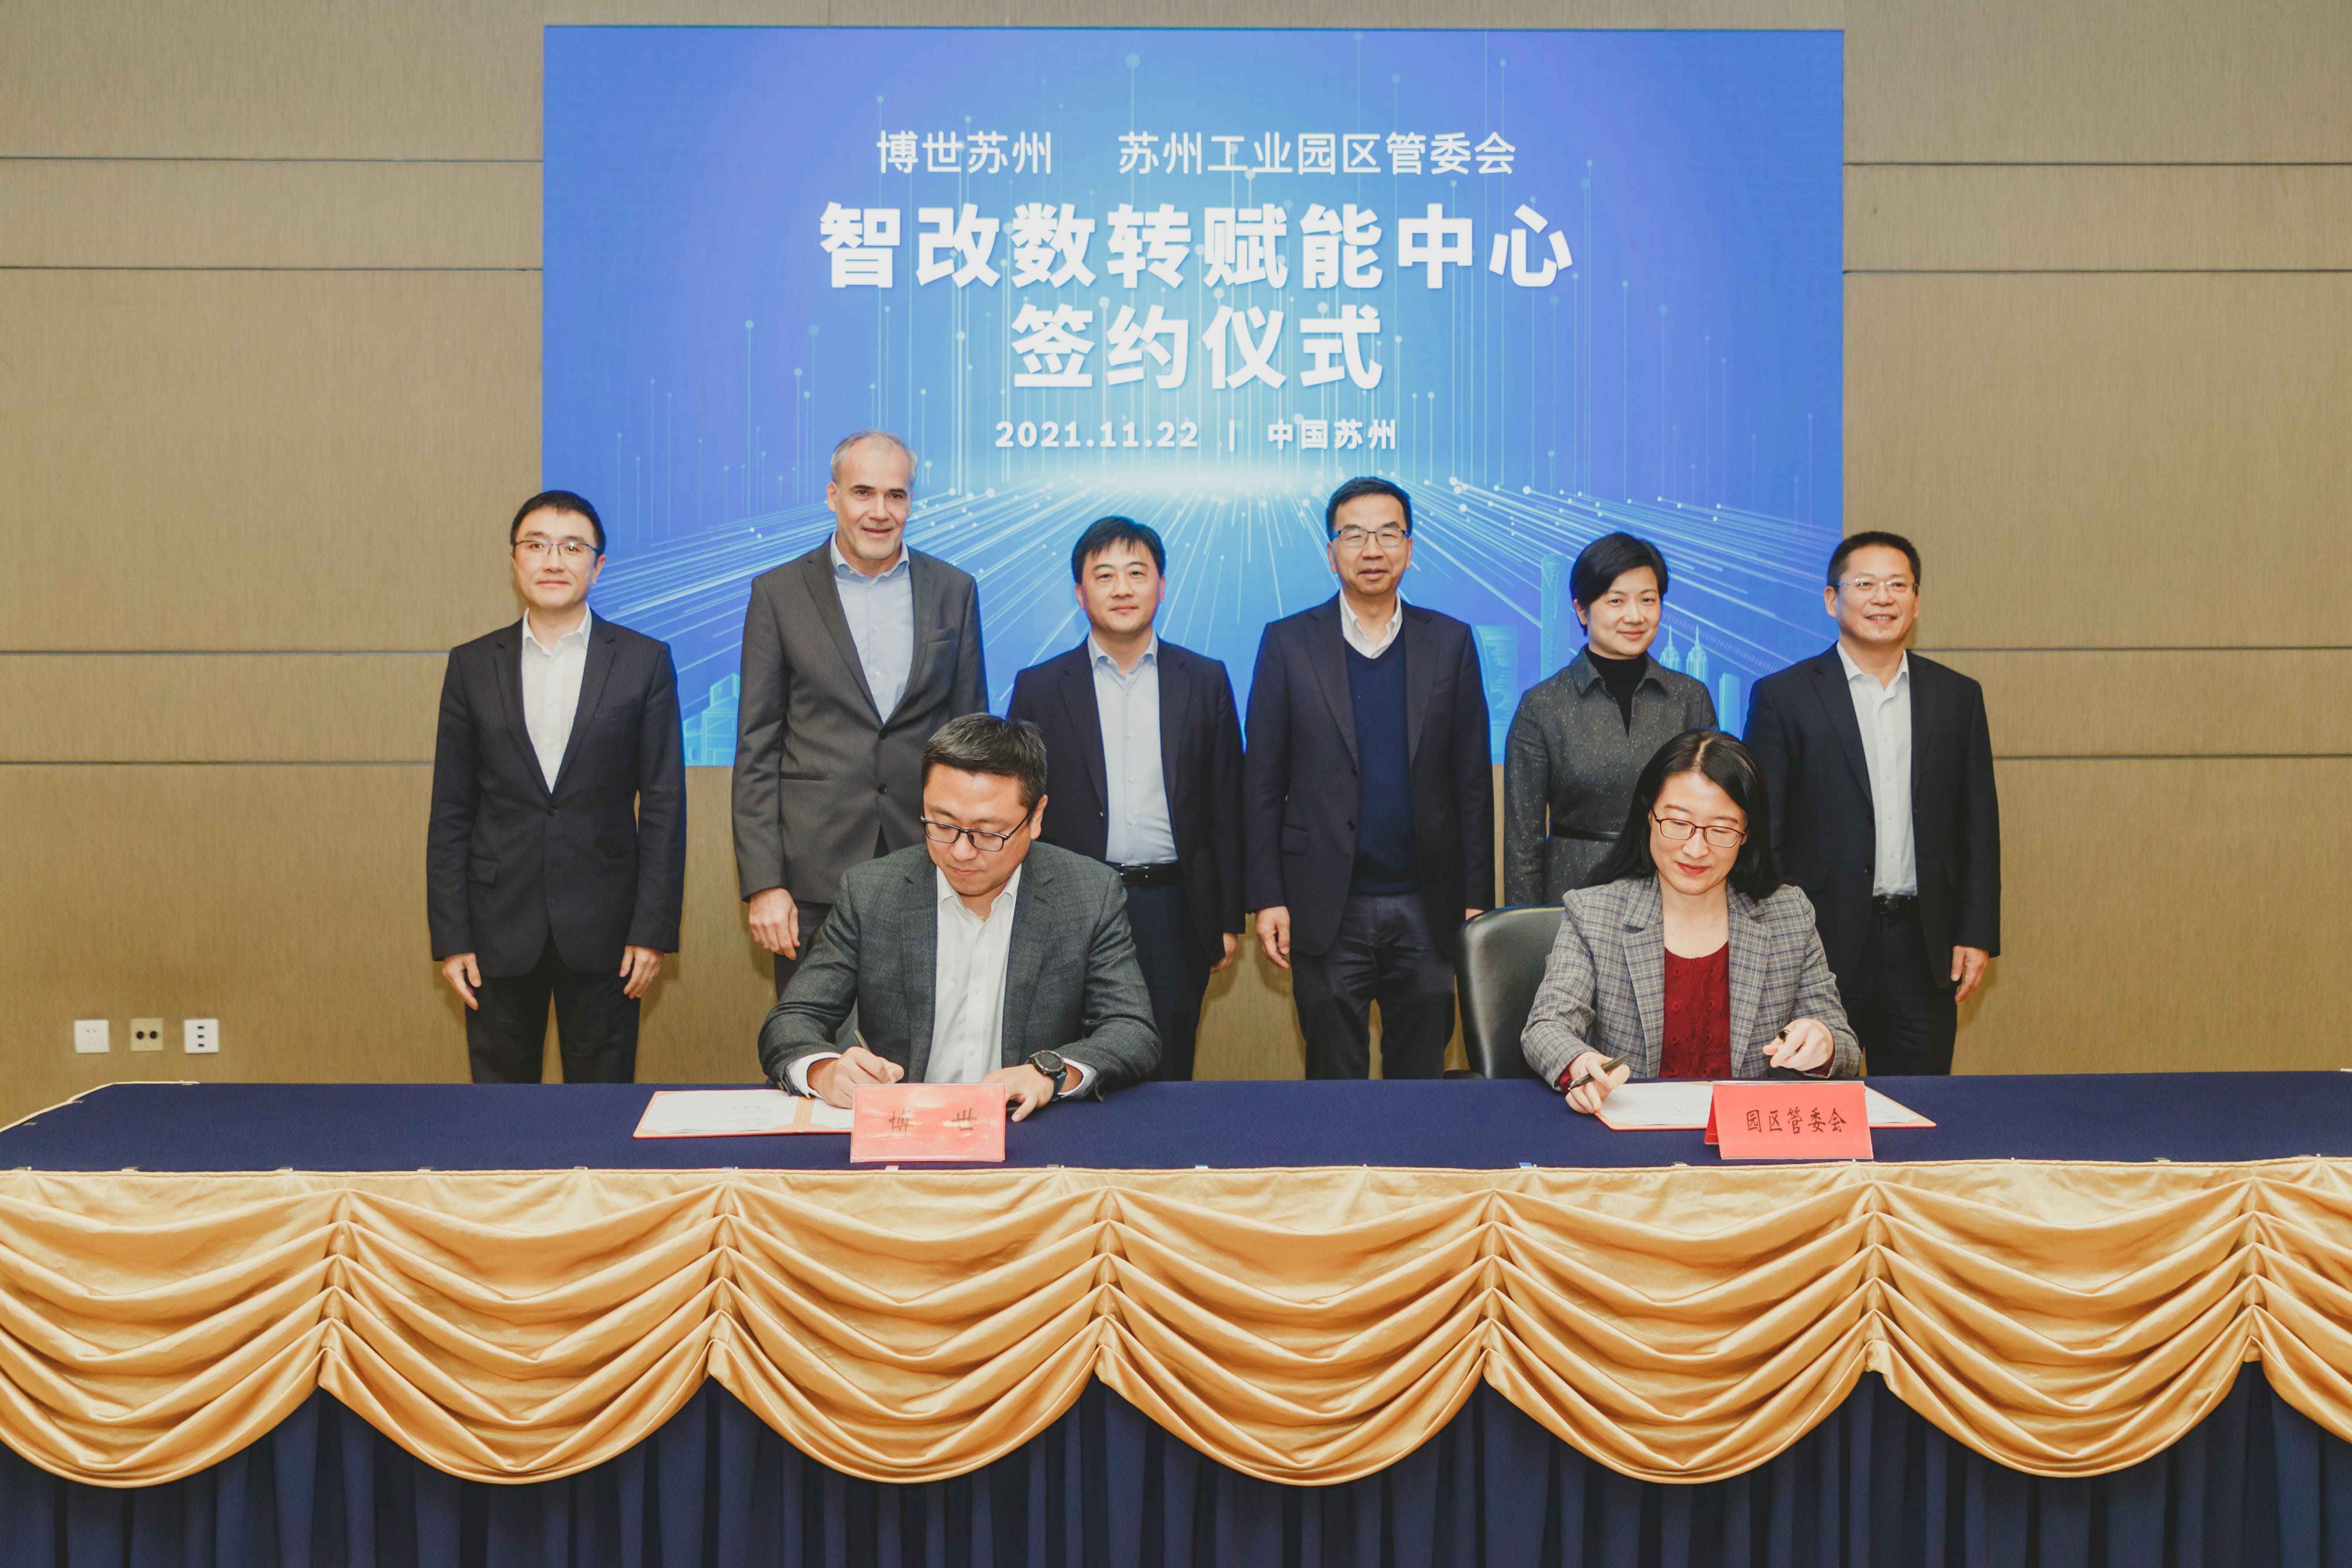 01 _博世苏州与苏州工业园区管委会正式达成战略合作 Bosch Suzhou announced a strategic partnership with the Administrative Committee of SIP (1).jpg